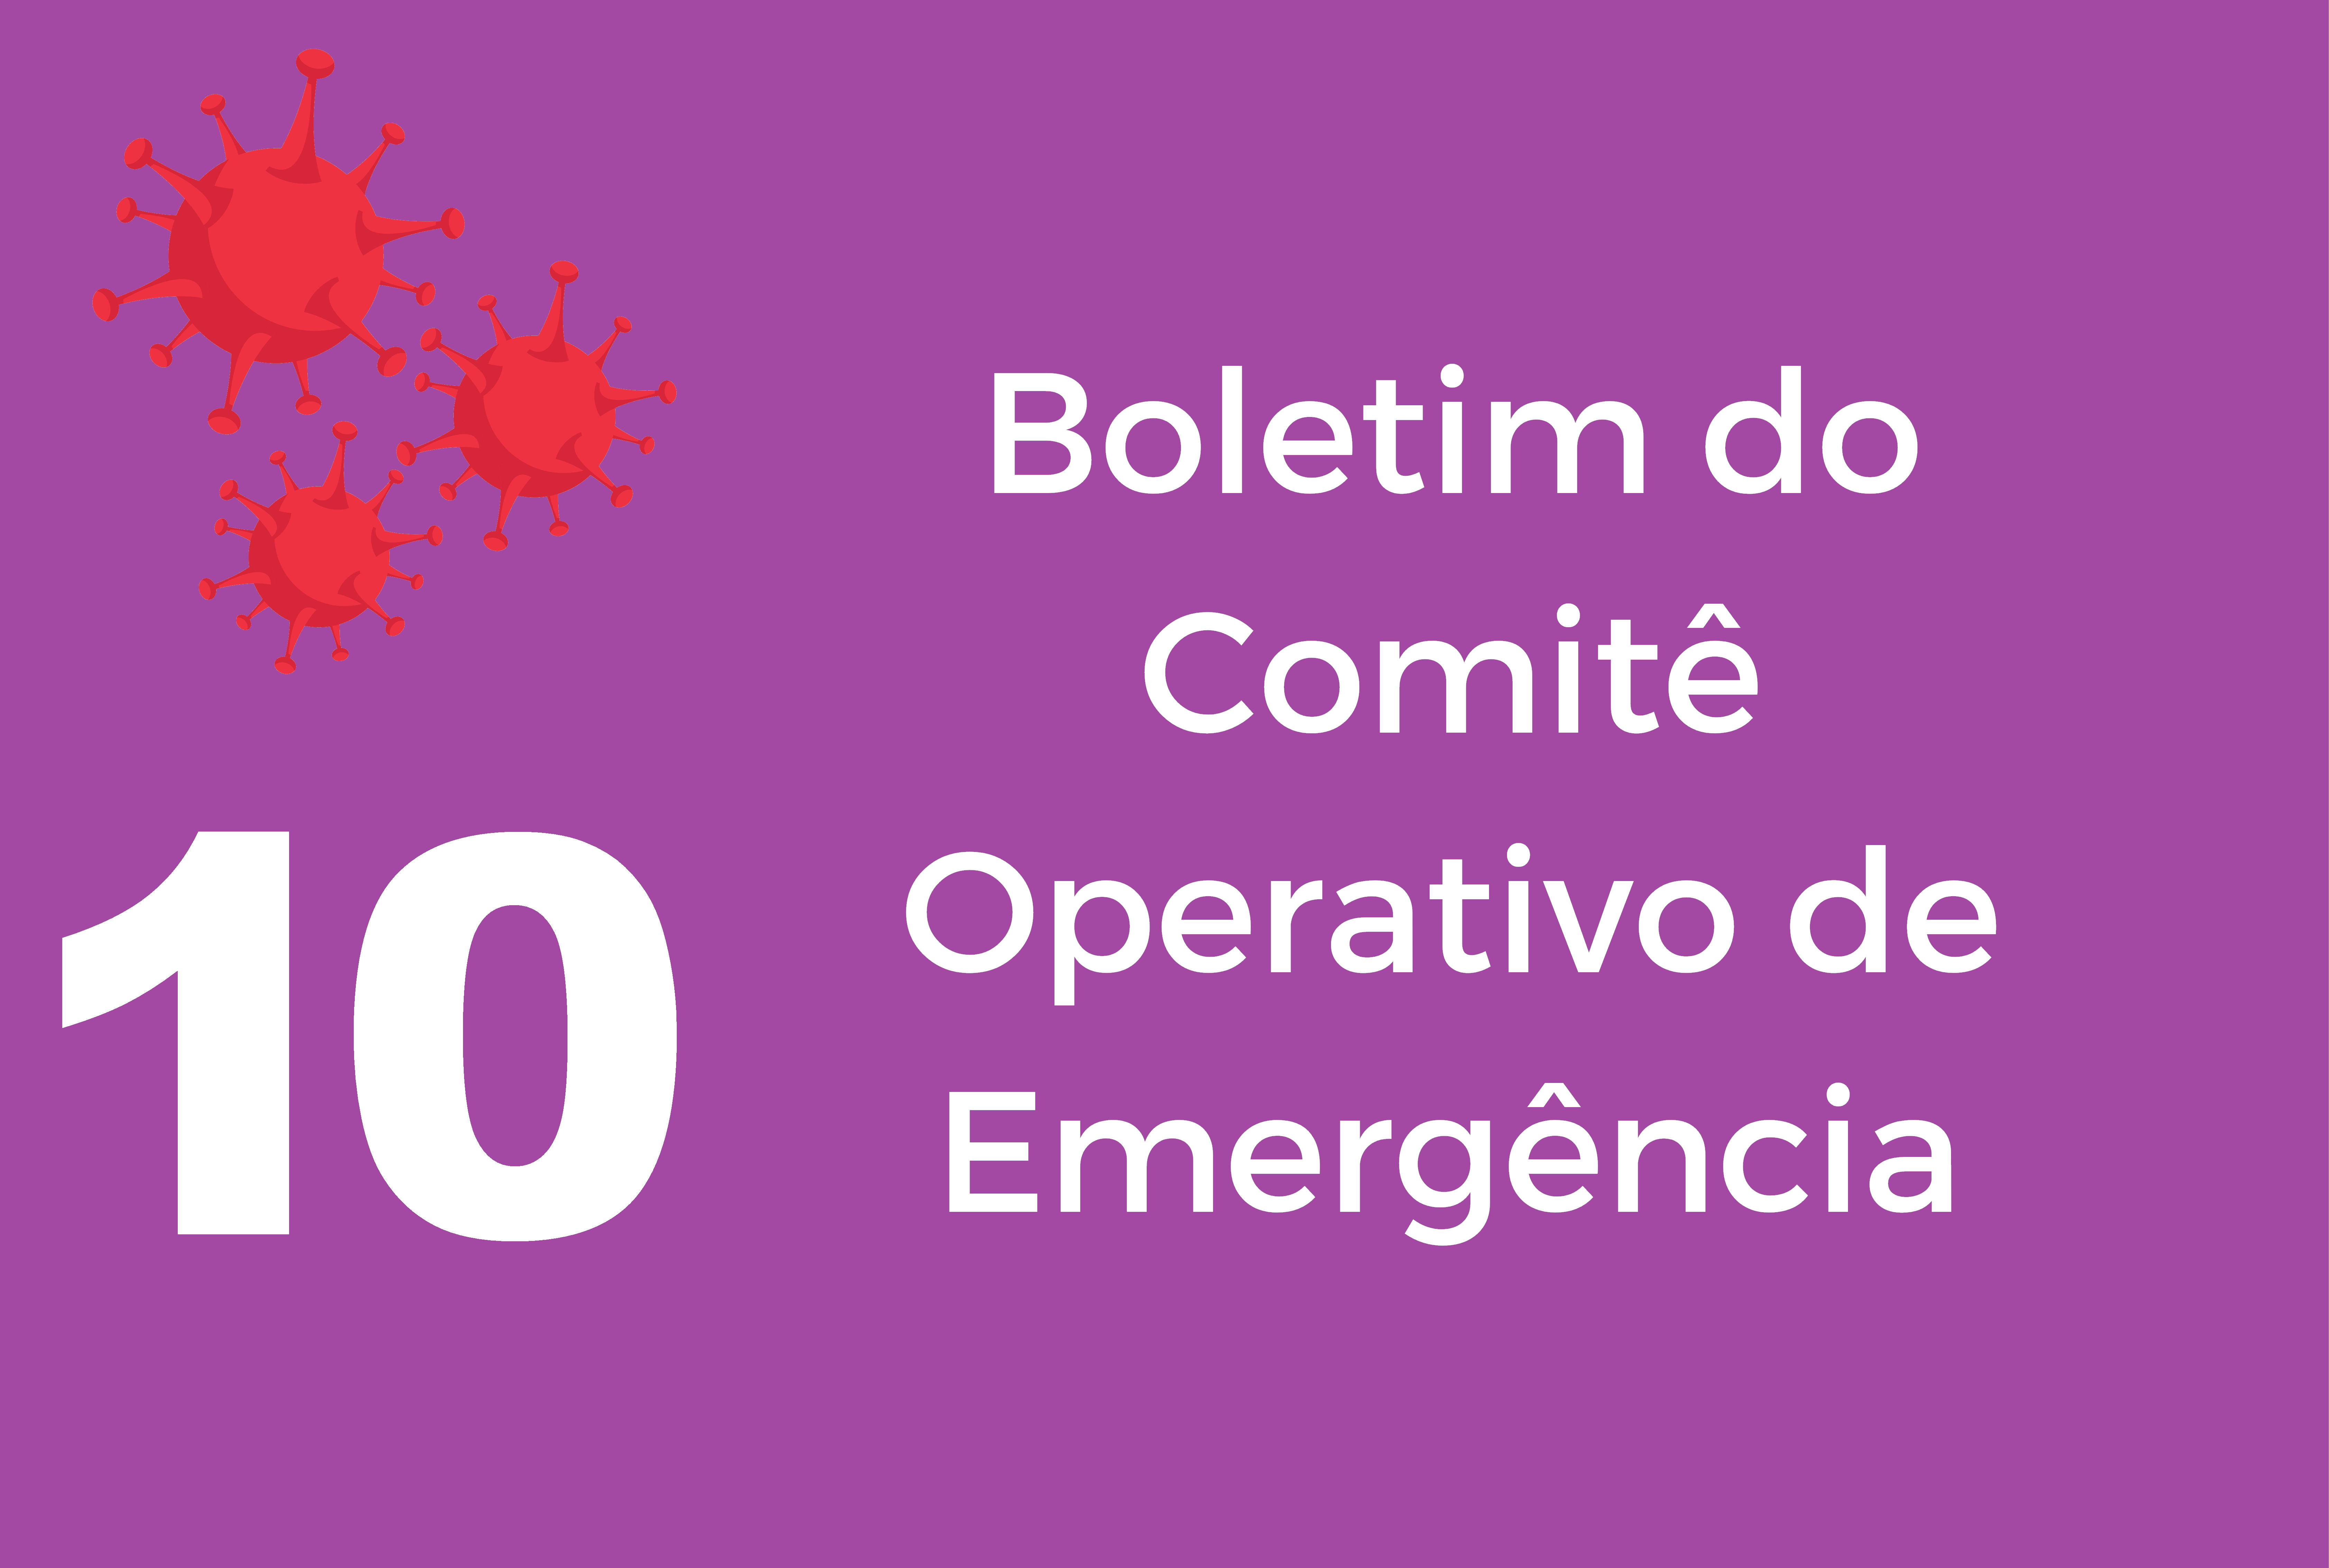 Descrição: sobre fundo violeta, no canto direito superior, a ilustração, em vermelho, do coronavírus.  Ao lado, em letras brancas, lê-se: "Boletim do Comitê Operativo de Emergência".  Do lado esquerdo, o numeral 10.